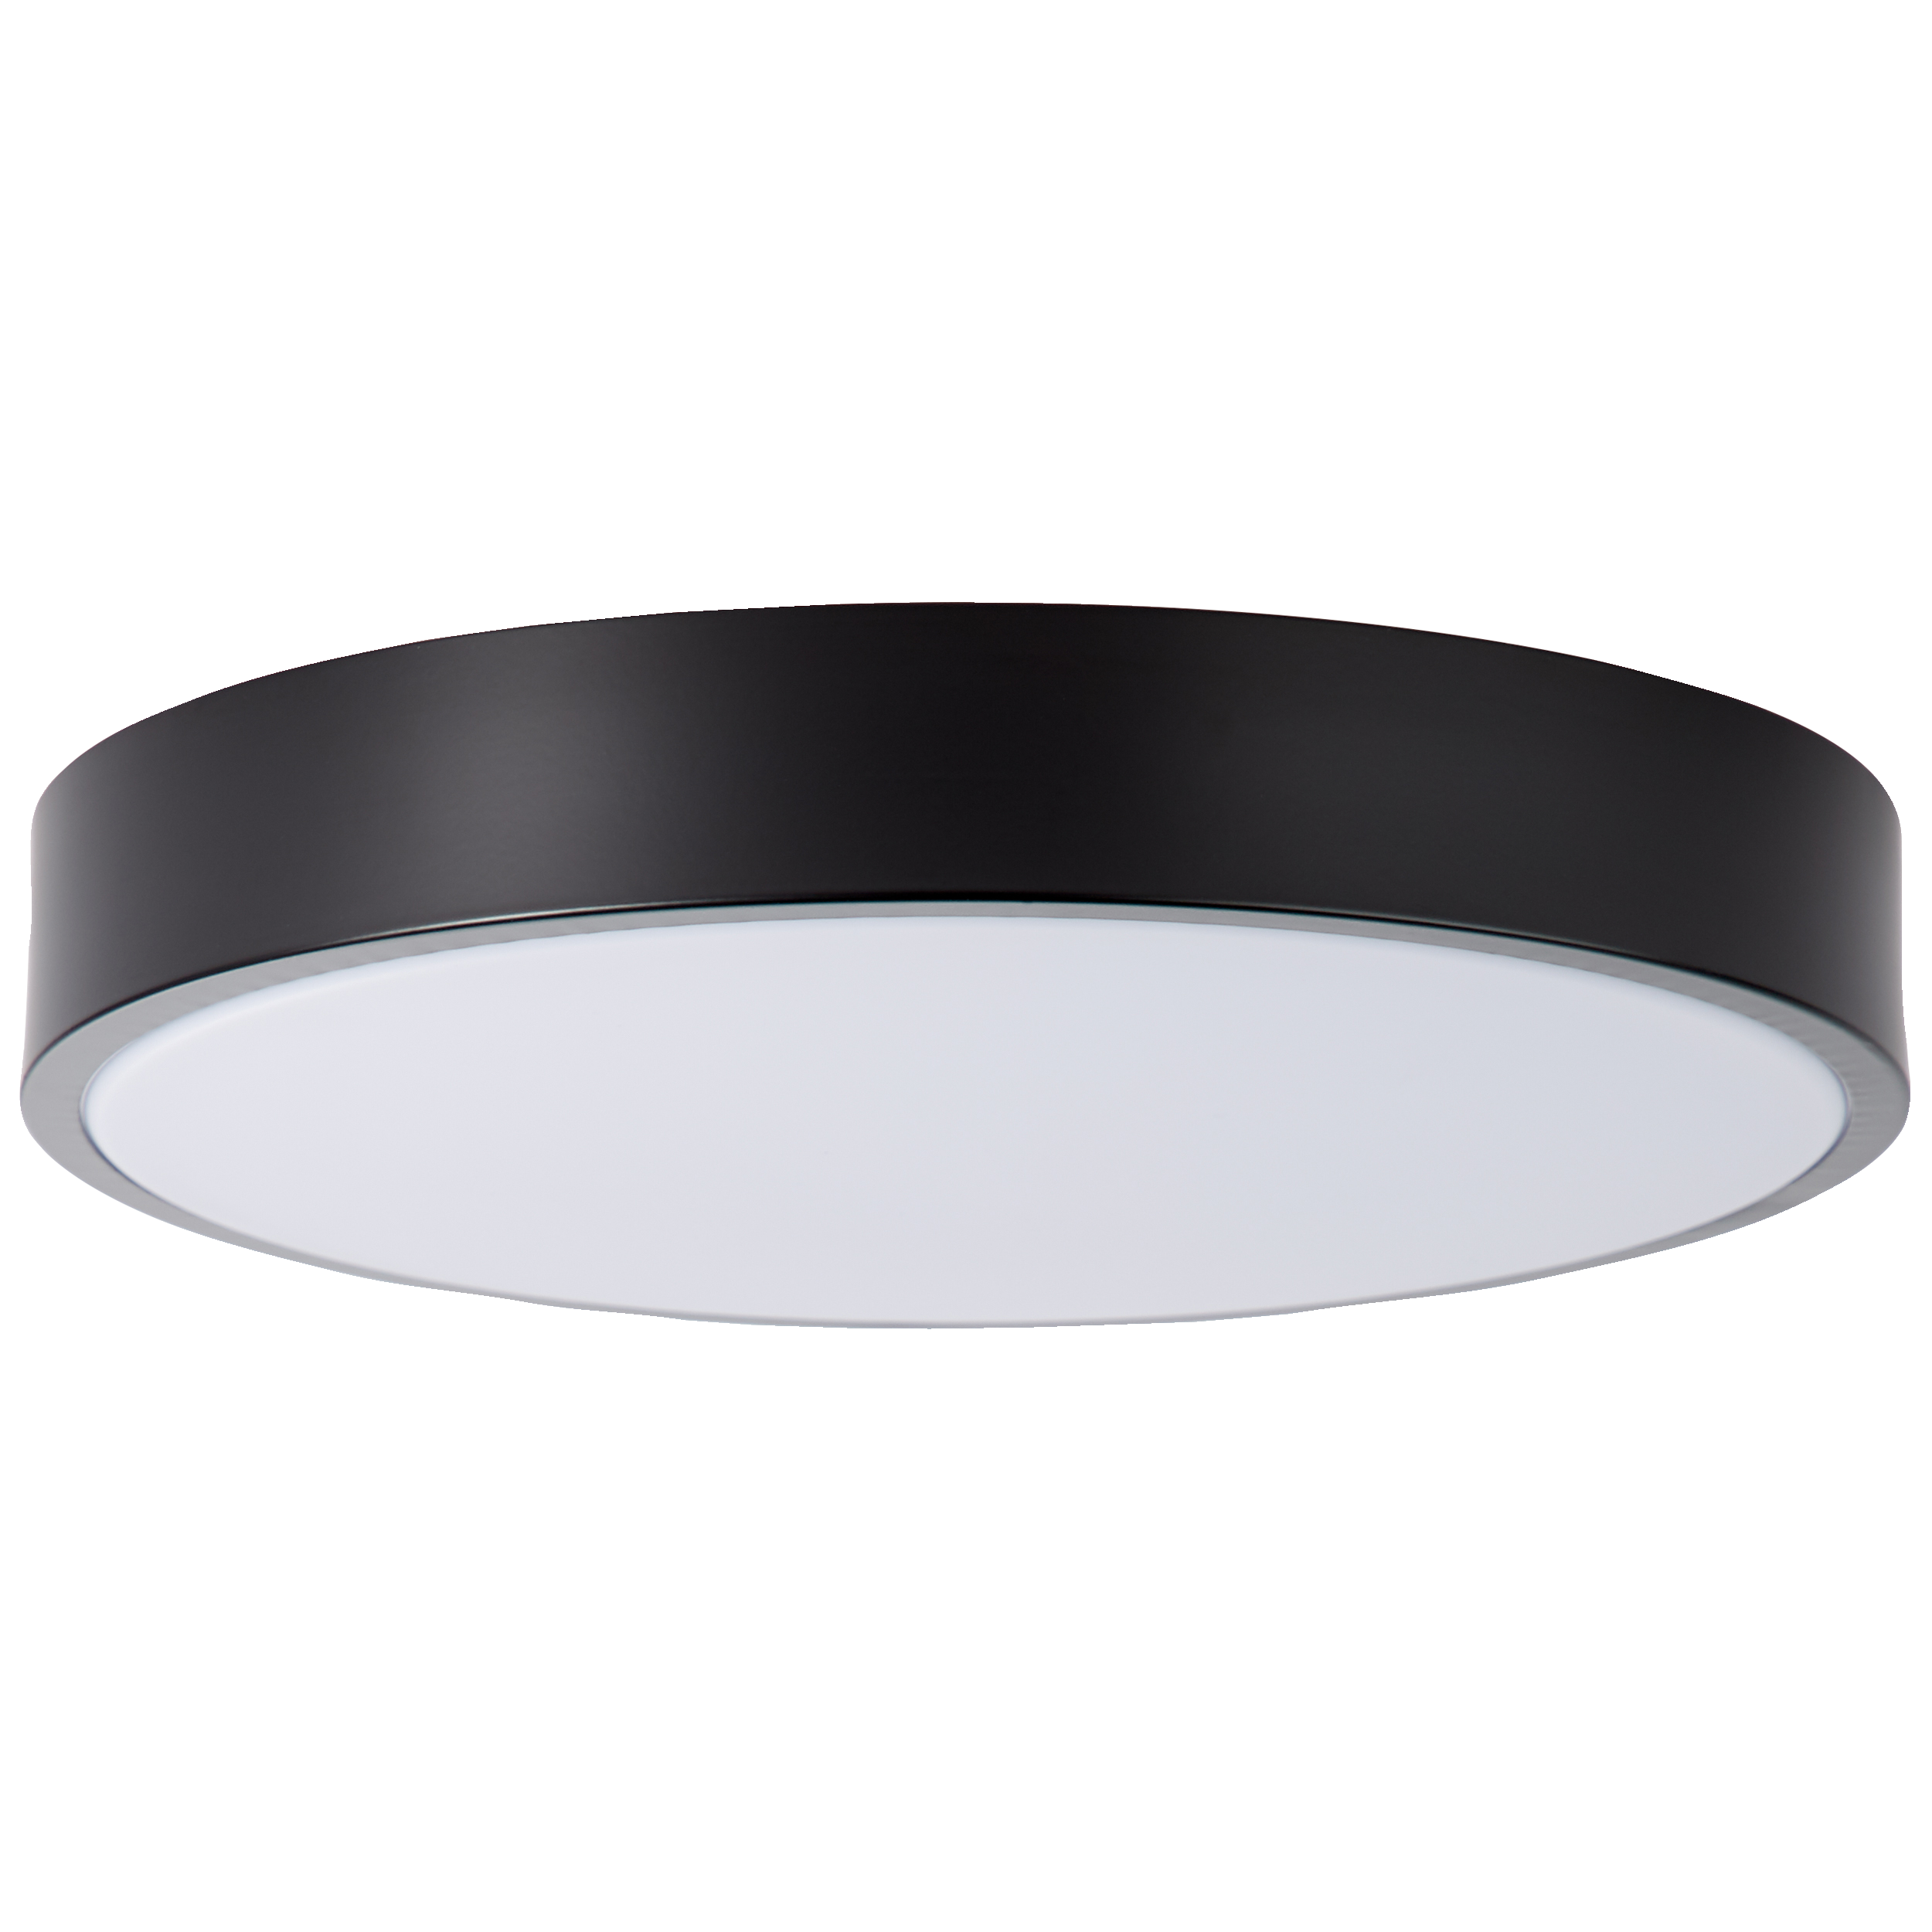 LED Deckenleuchte 33cm weiß/schwarz · Lightbox Leuchten & Licht GmbH